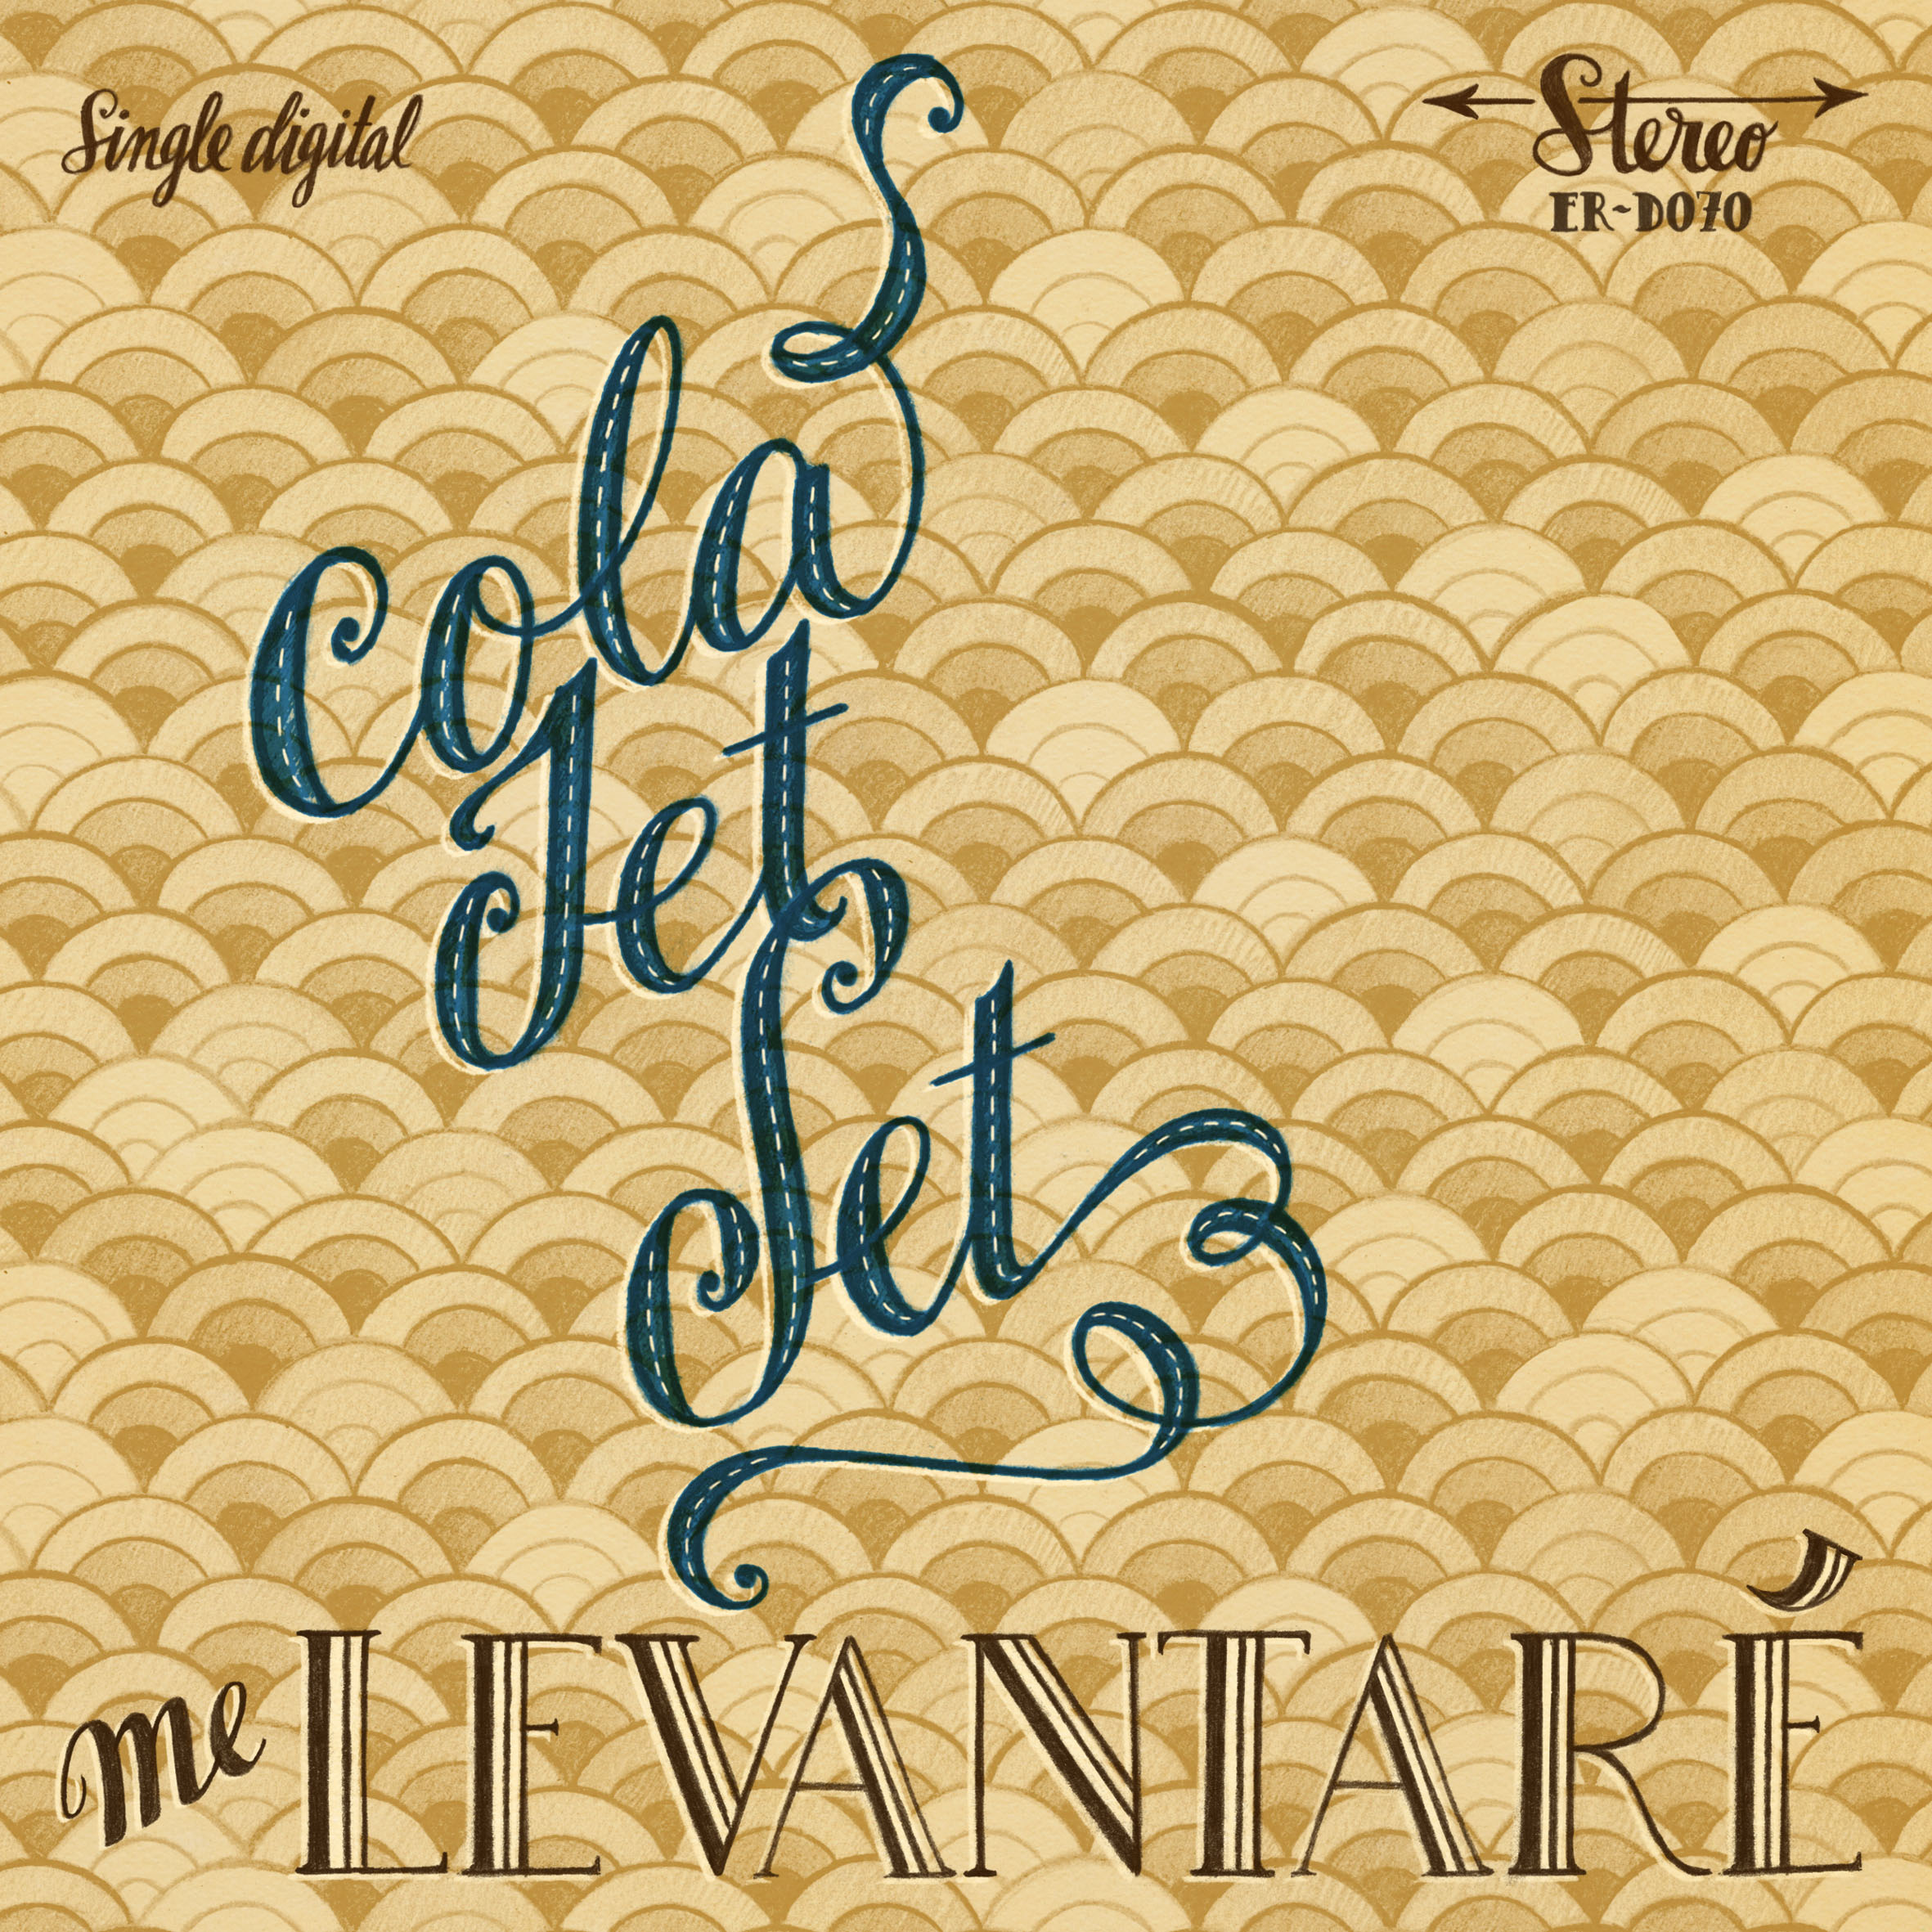 Cola Jet Set "Me Levantaré" Single Digital